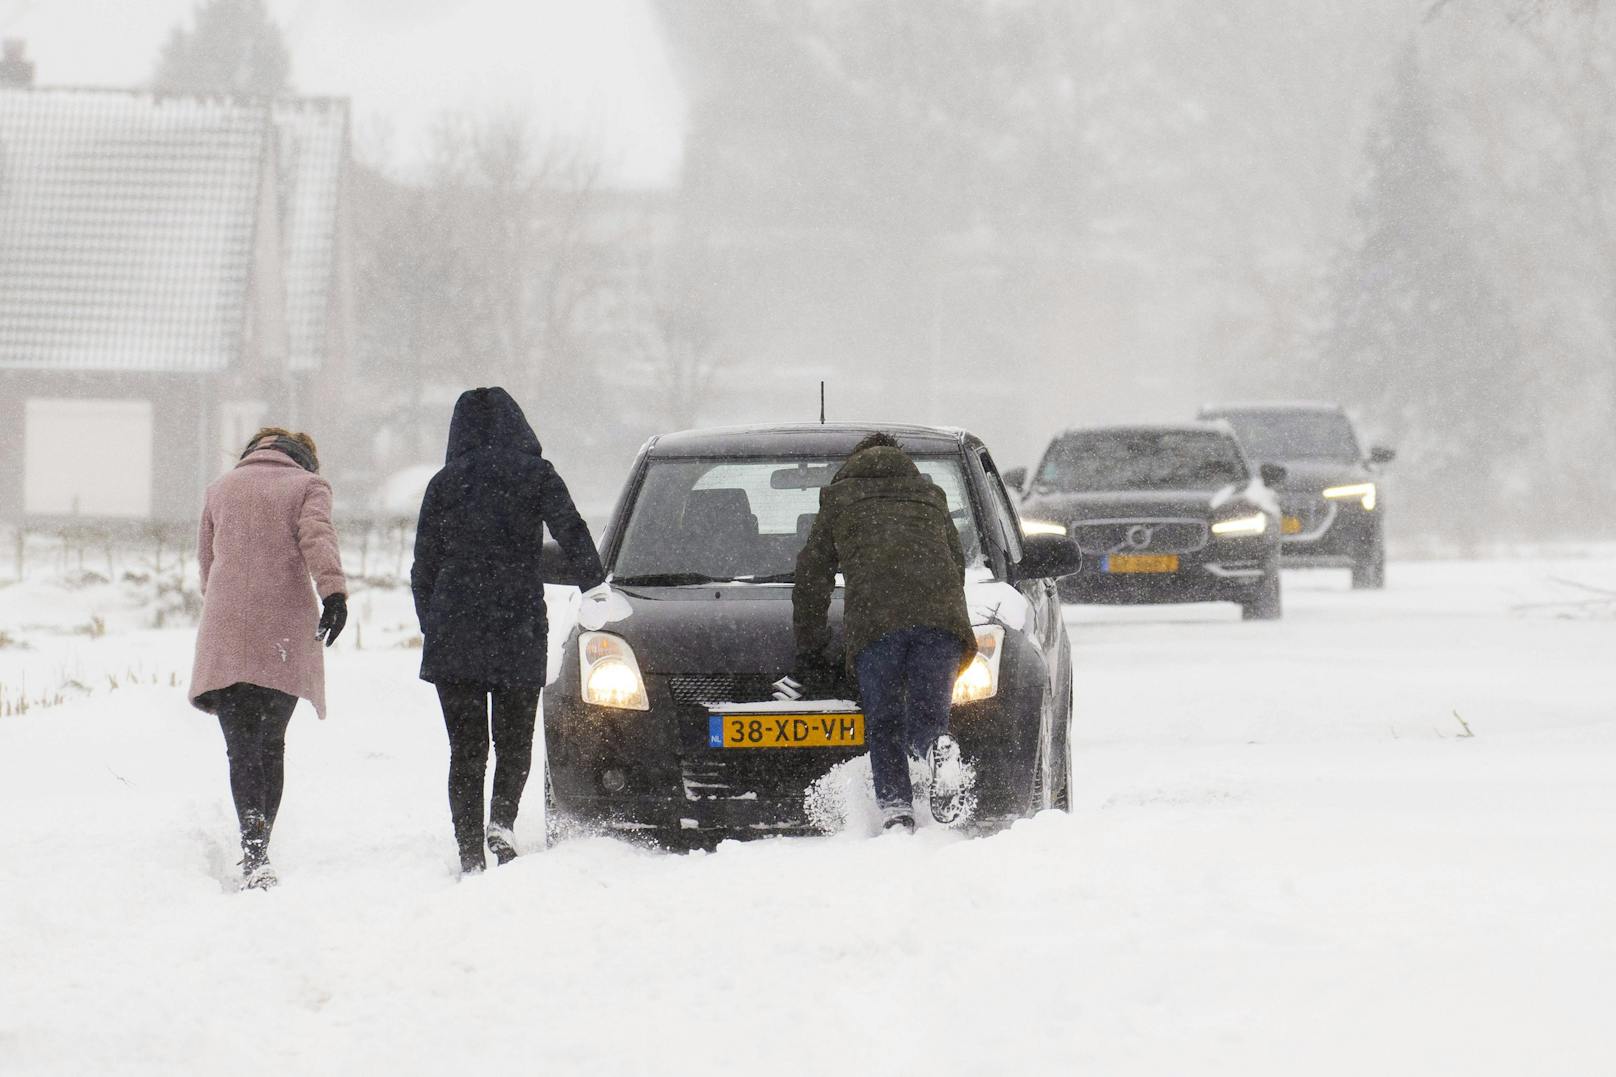 Die niederländische Regierung hatte erst am Samstag neue Schnee-Regeln erlassen, die etwa den Mindestabstand bei Schneeball-Schlachten regeln.